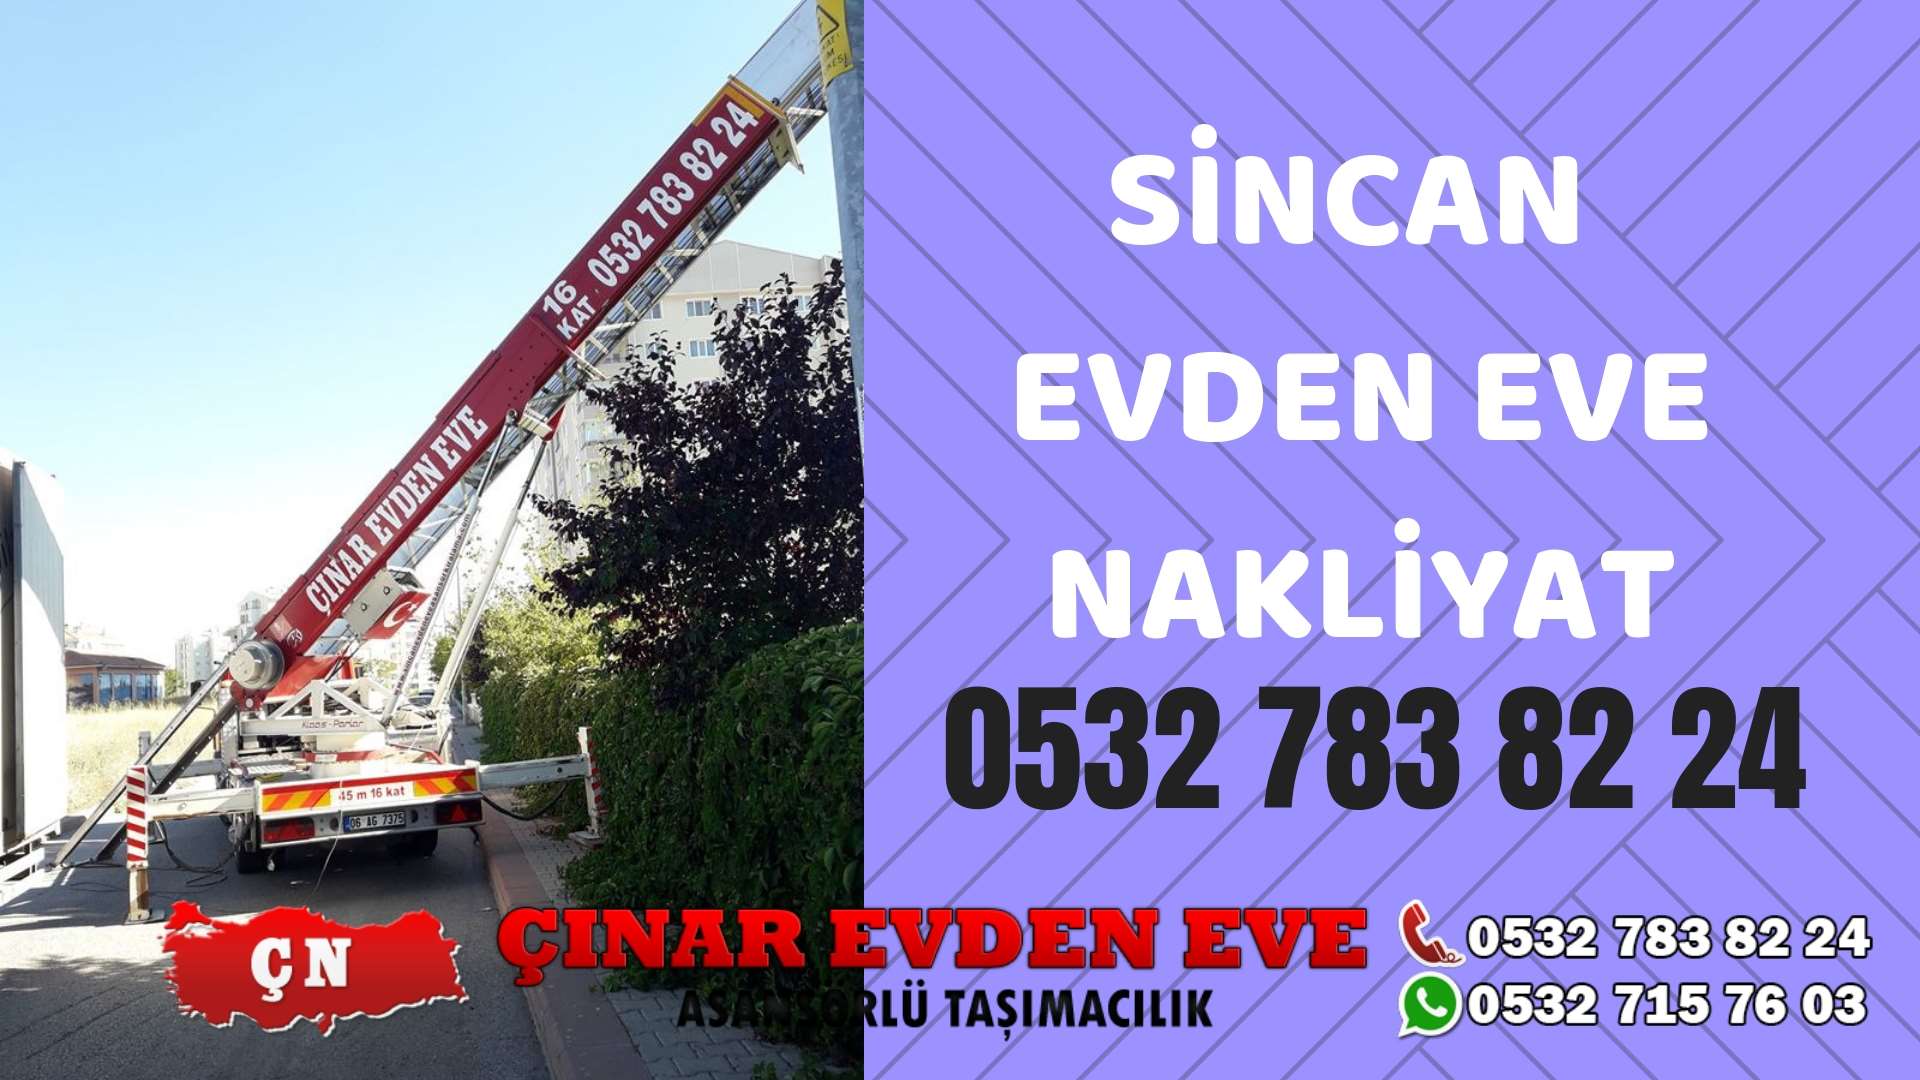 Ankara Yapracık Sincan evden eve asansörlü nakliyat en ucuz nakliye 0532 715 76 03